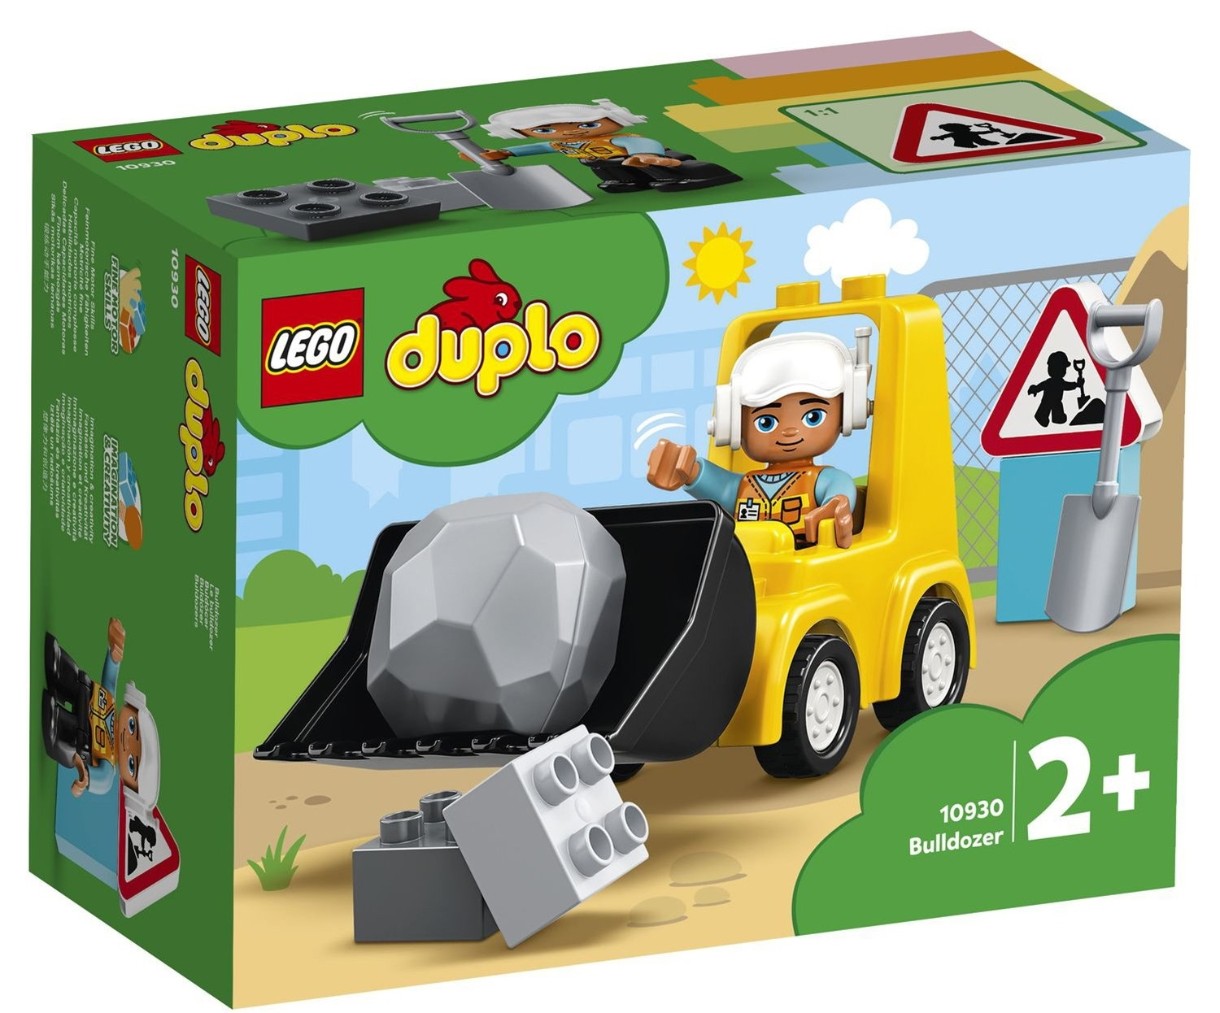 Set de construcție Lego Duplo: Bulldozer (10930)